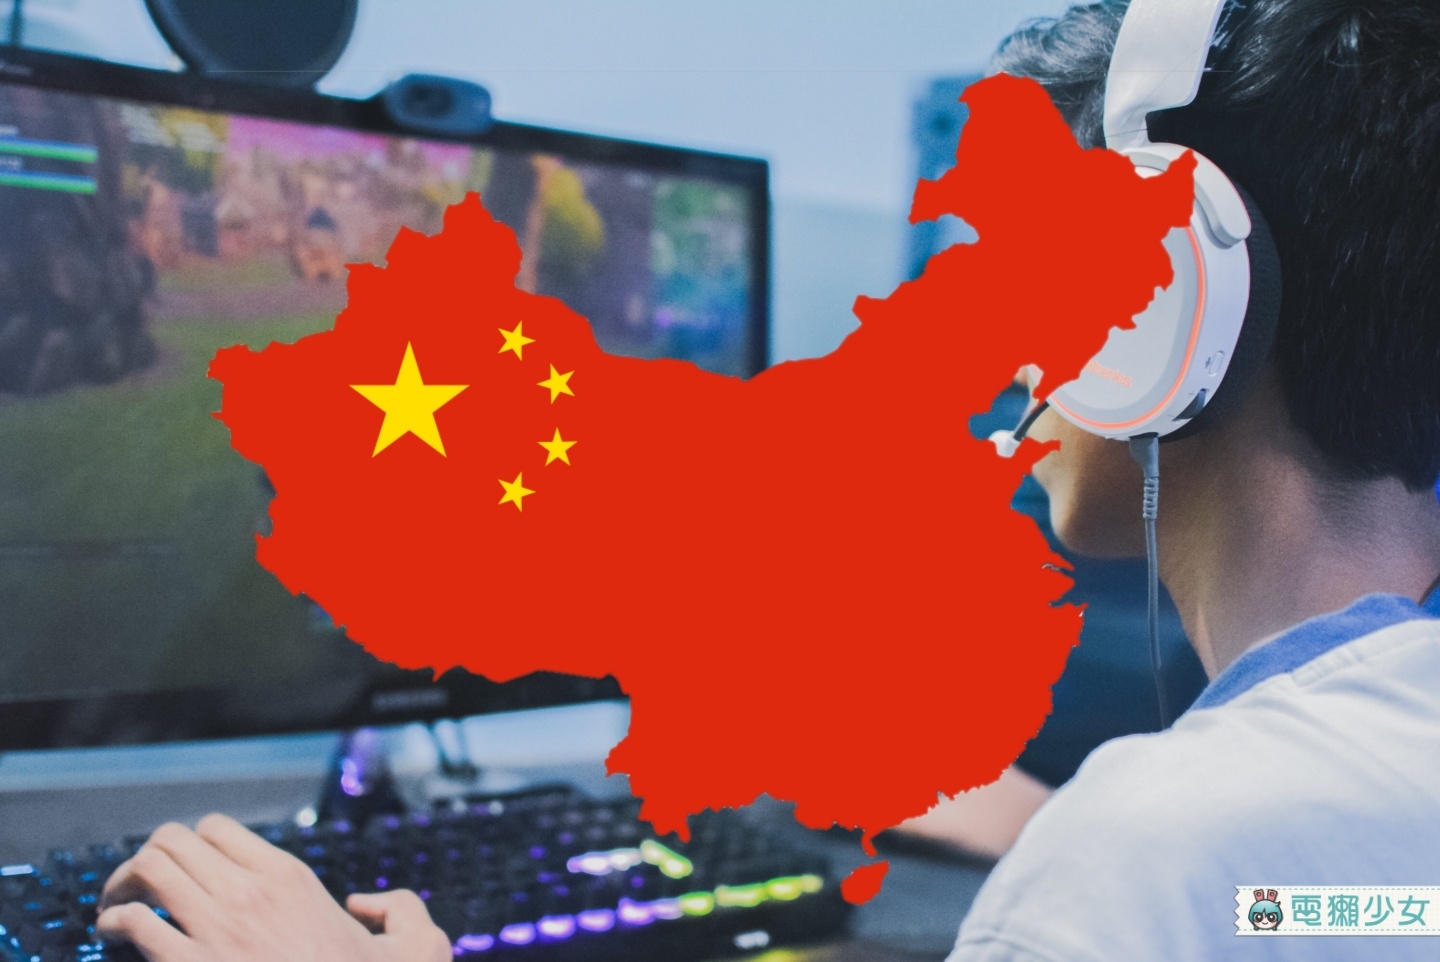 未成年晚上 10 點禁止玩線上遊戲！中國防止青少年網路成癮又推新措施啦！